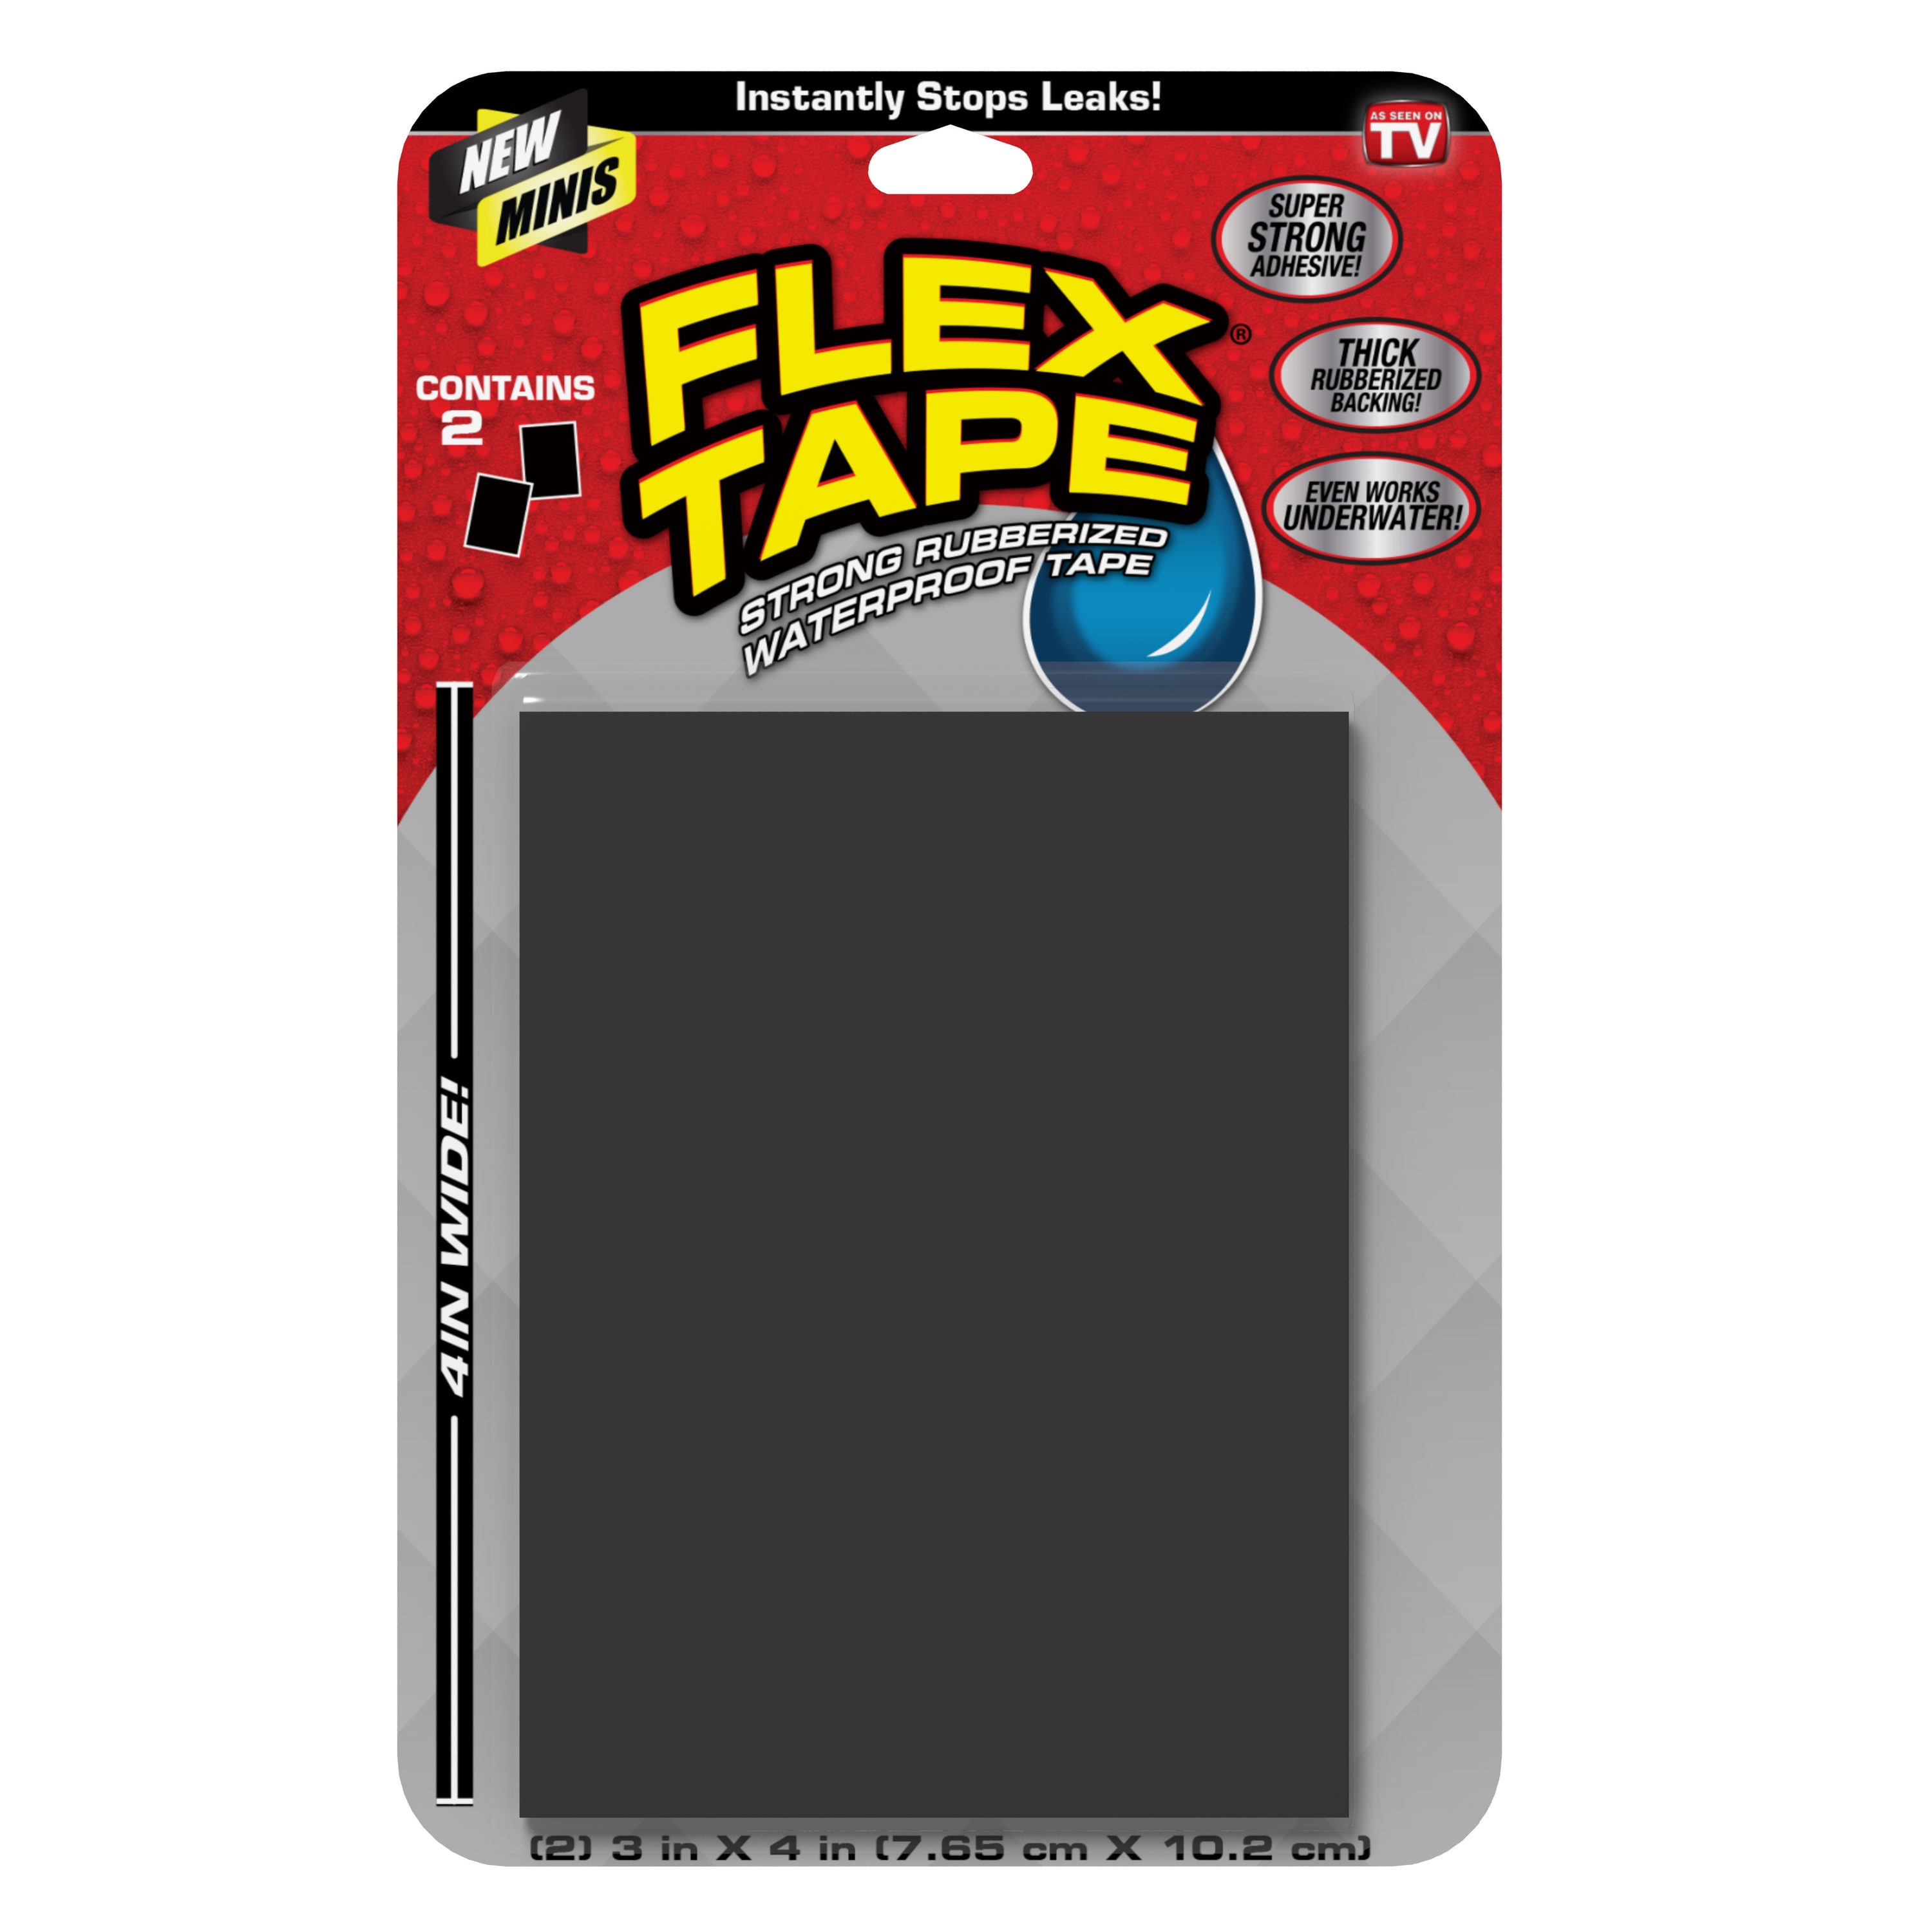 Flex Tape Mini Black Waterproof Rubberized Duct Tape 4-in x 3-in